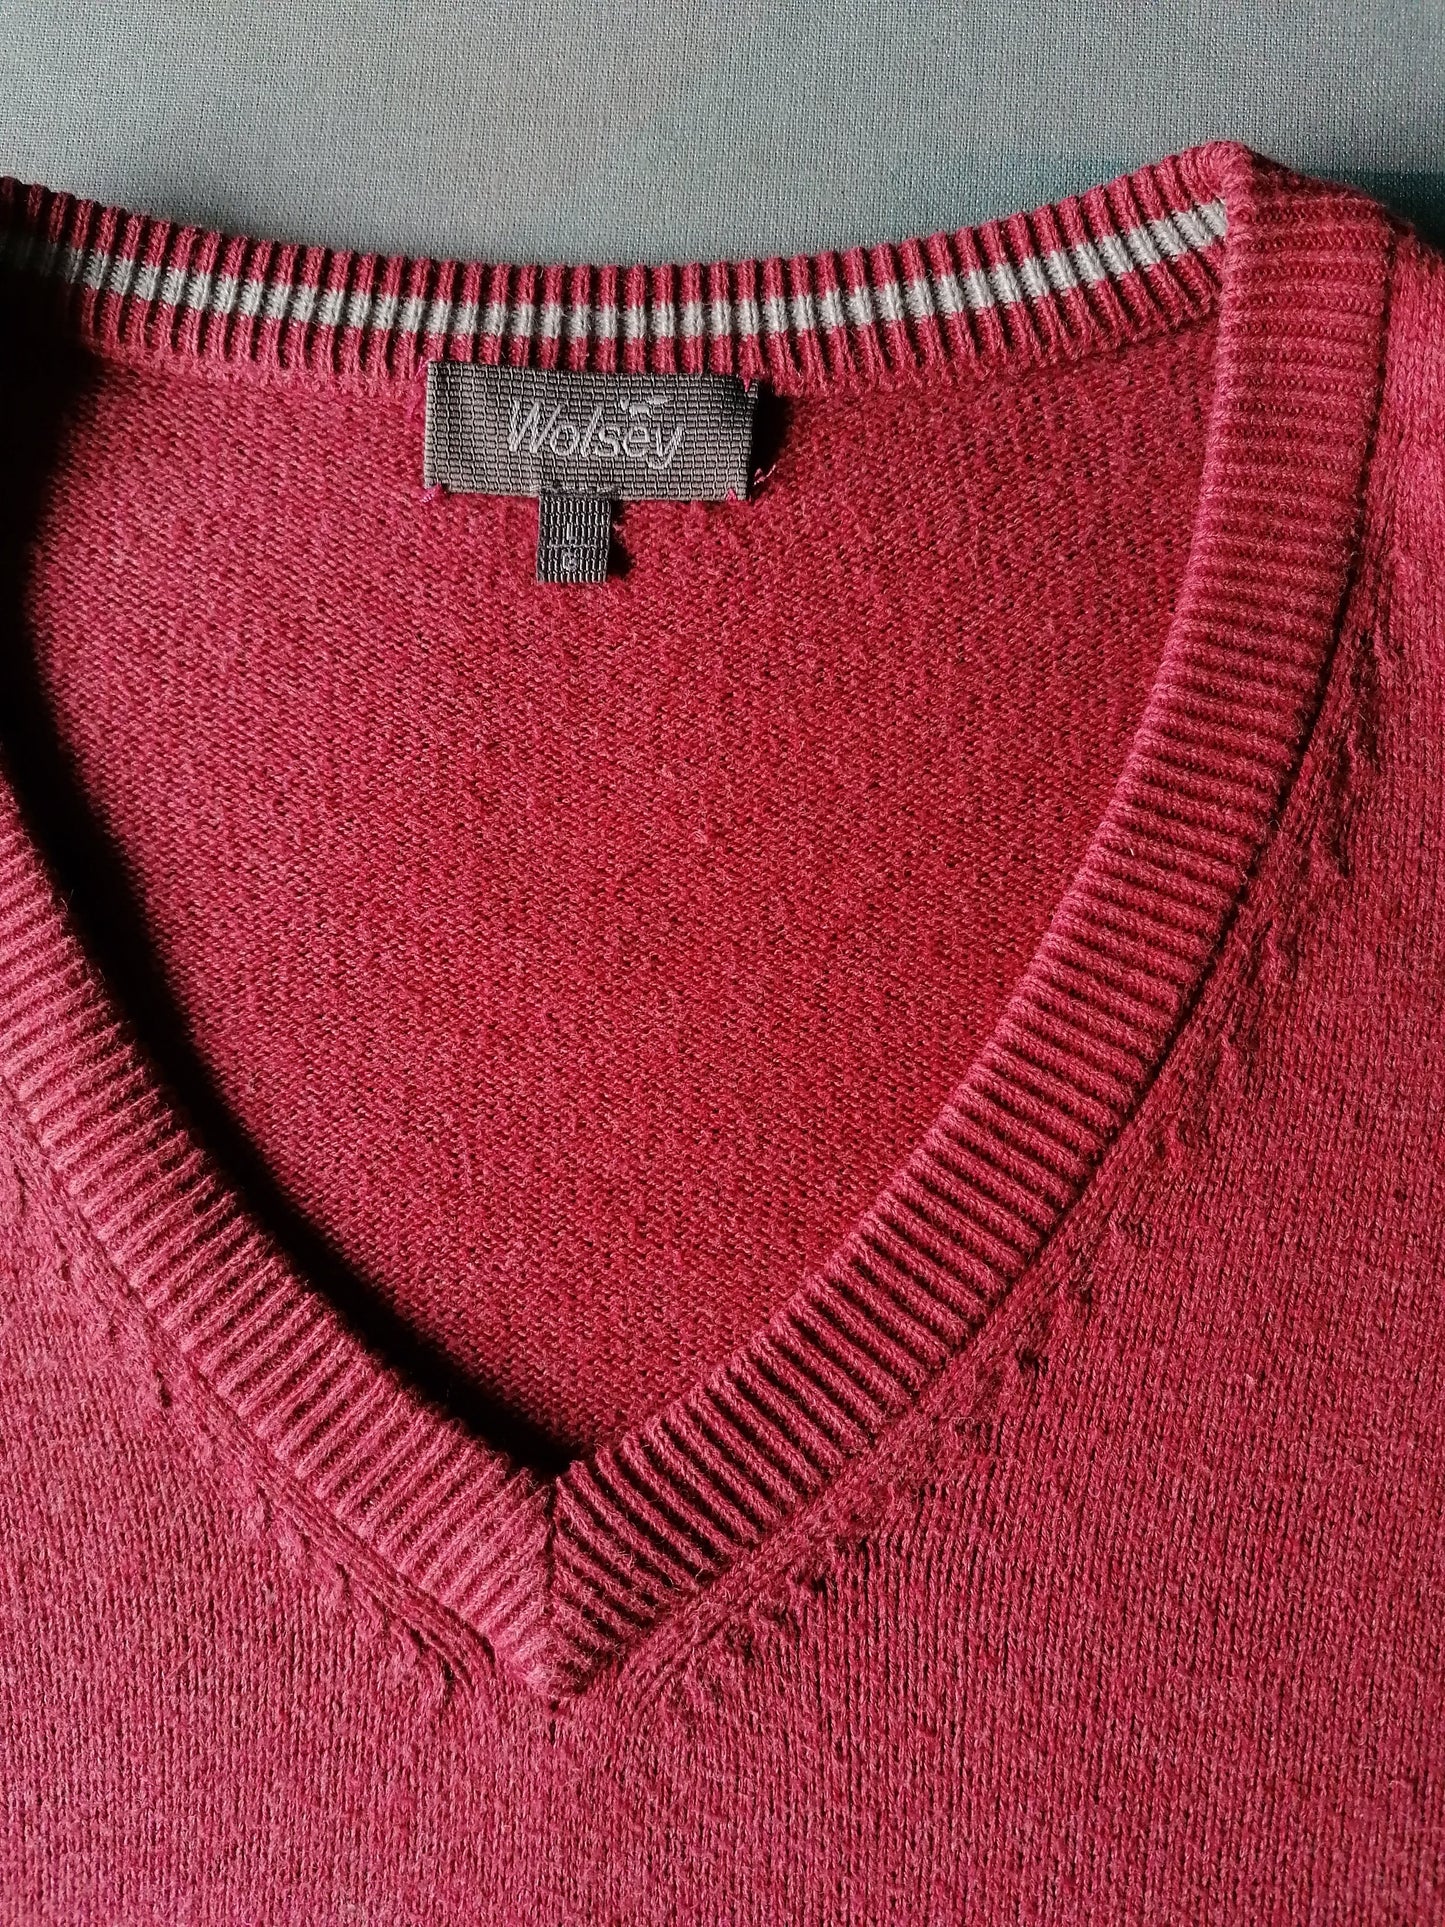 Maglione da wolsey con scollo a V. Dark rosa colorato. Taglia L.